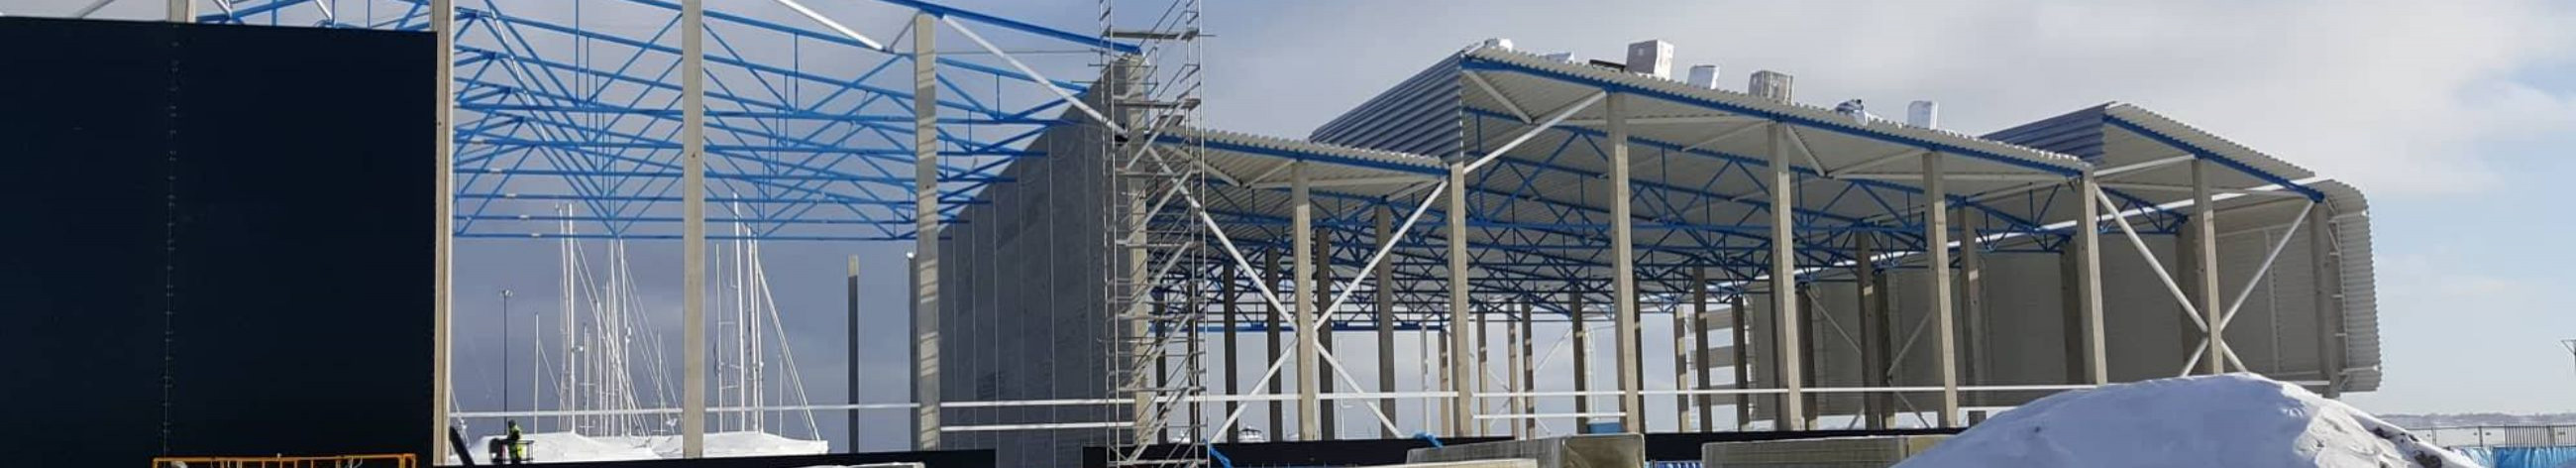 Regmet Ehitus OÜ pakub metallkonstruktsioonide, PVC-hallide ja sandwich-paneelide paigaldust ning hooldust.